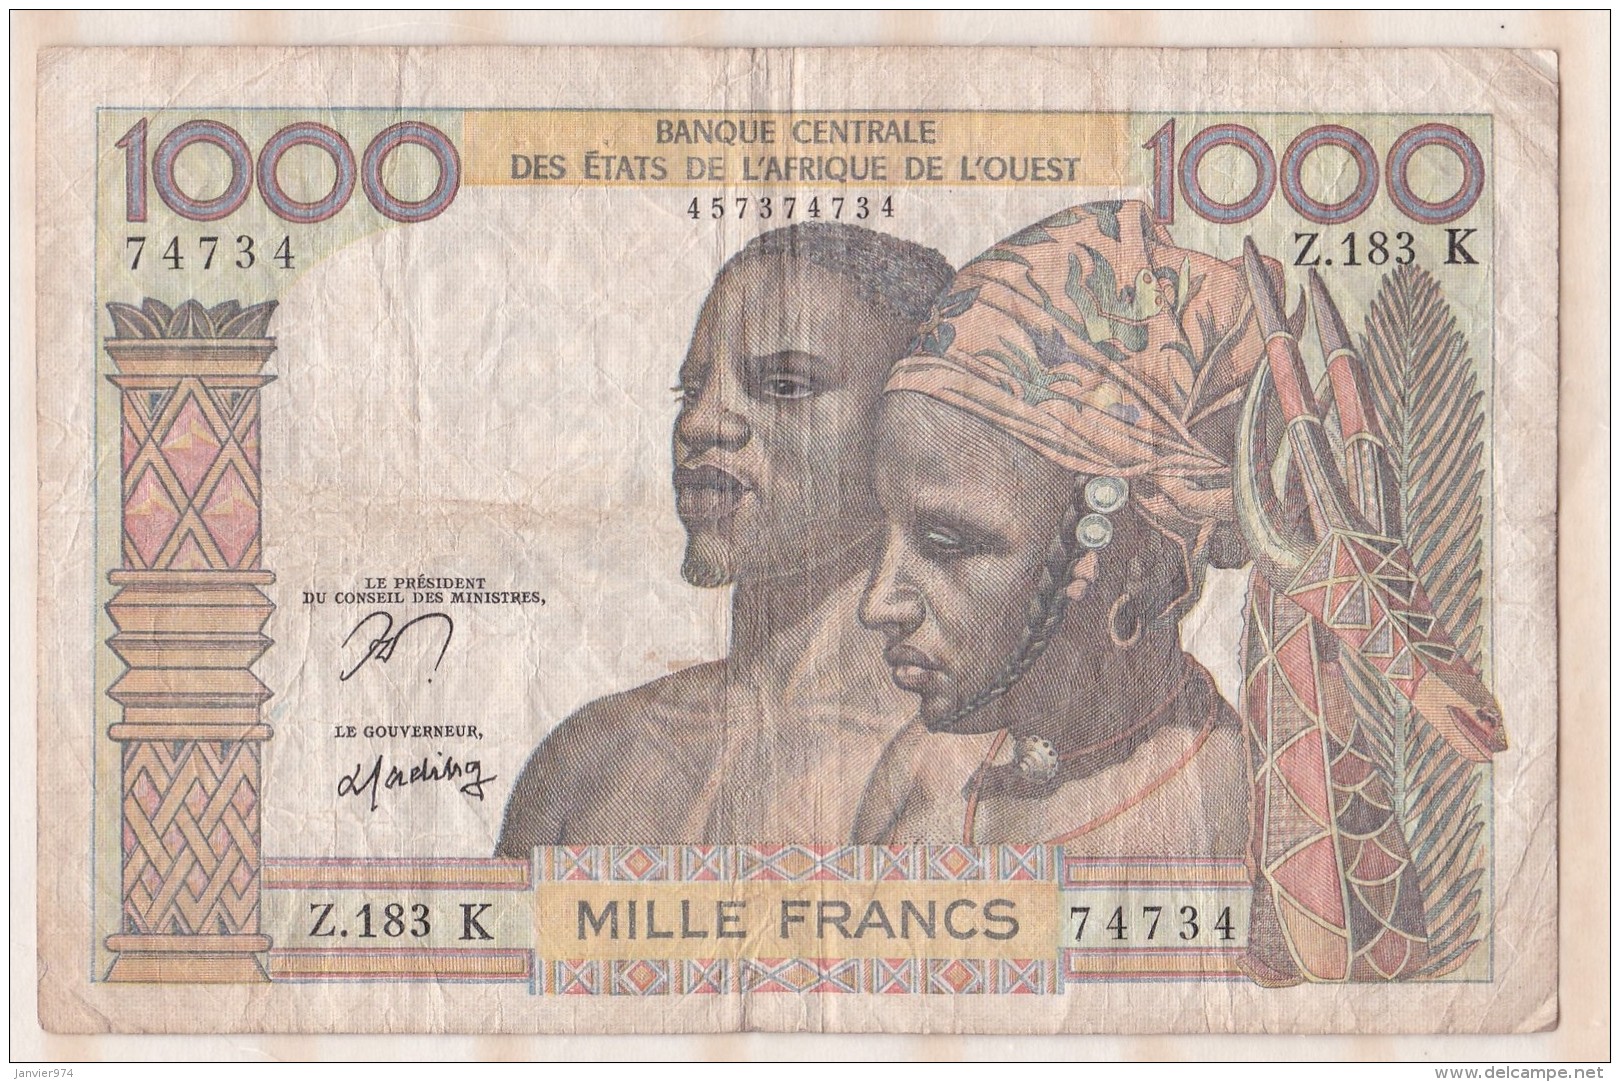 Billet BCEAO  1000 Francs  , Alphabet Z.183 K ,n° 74734 - West African States